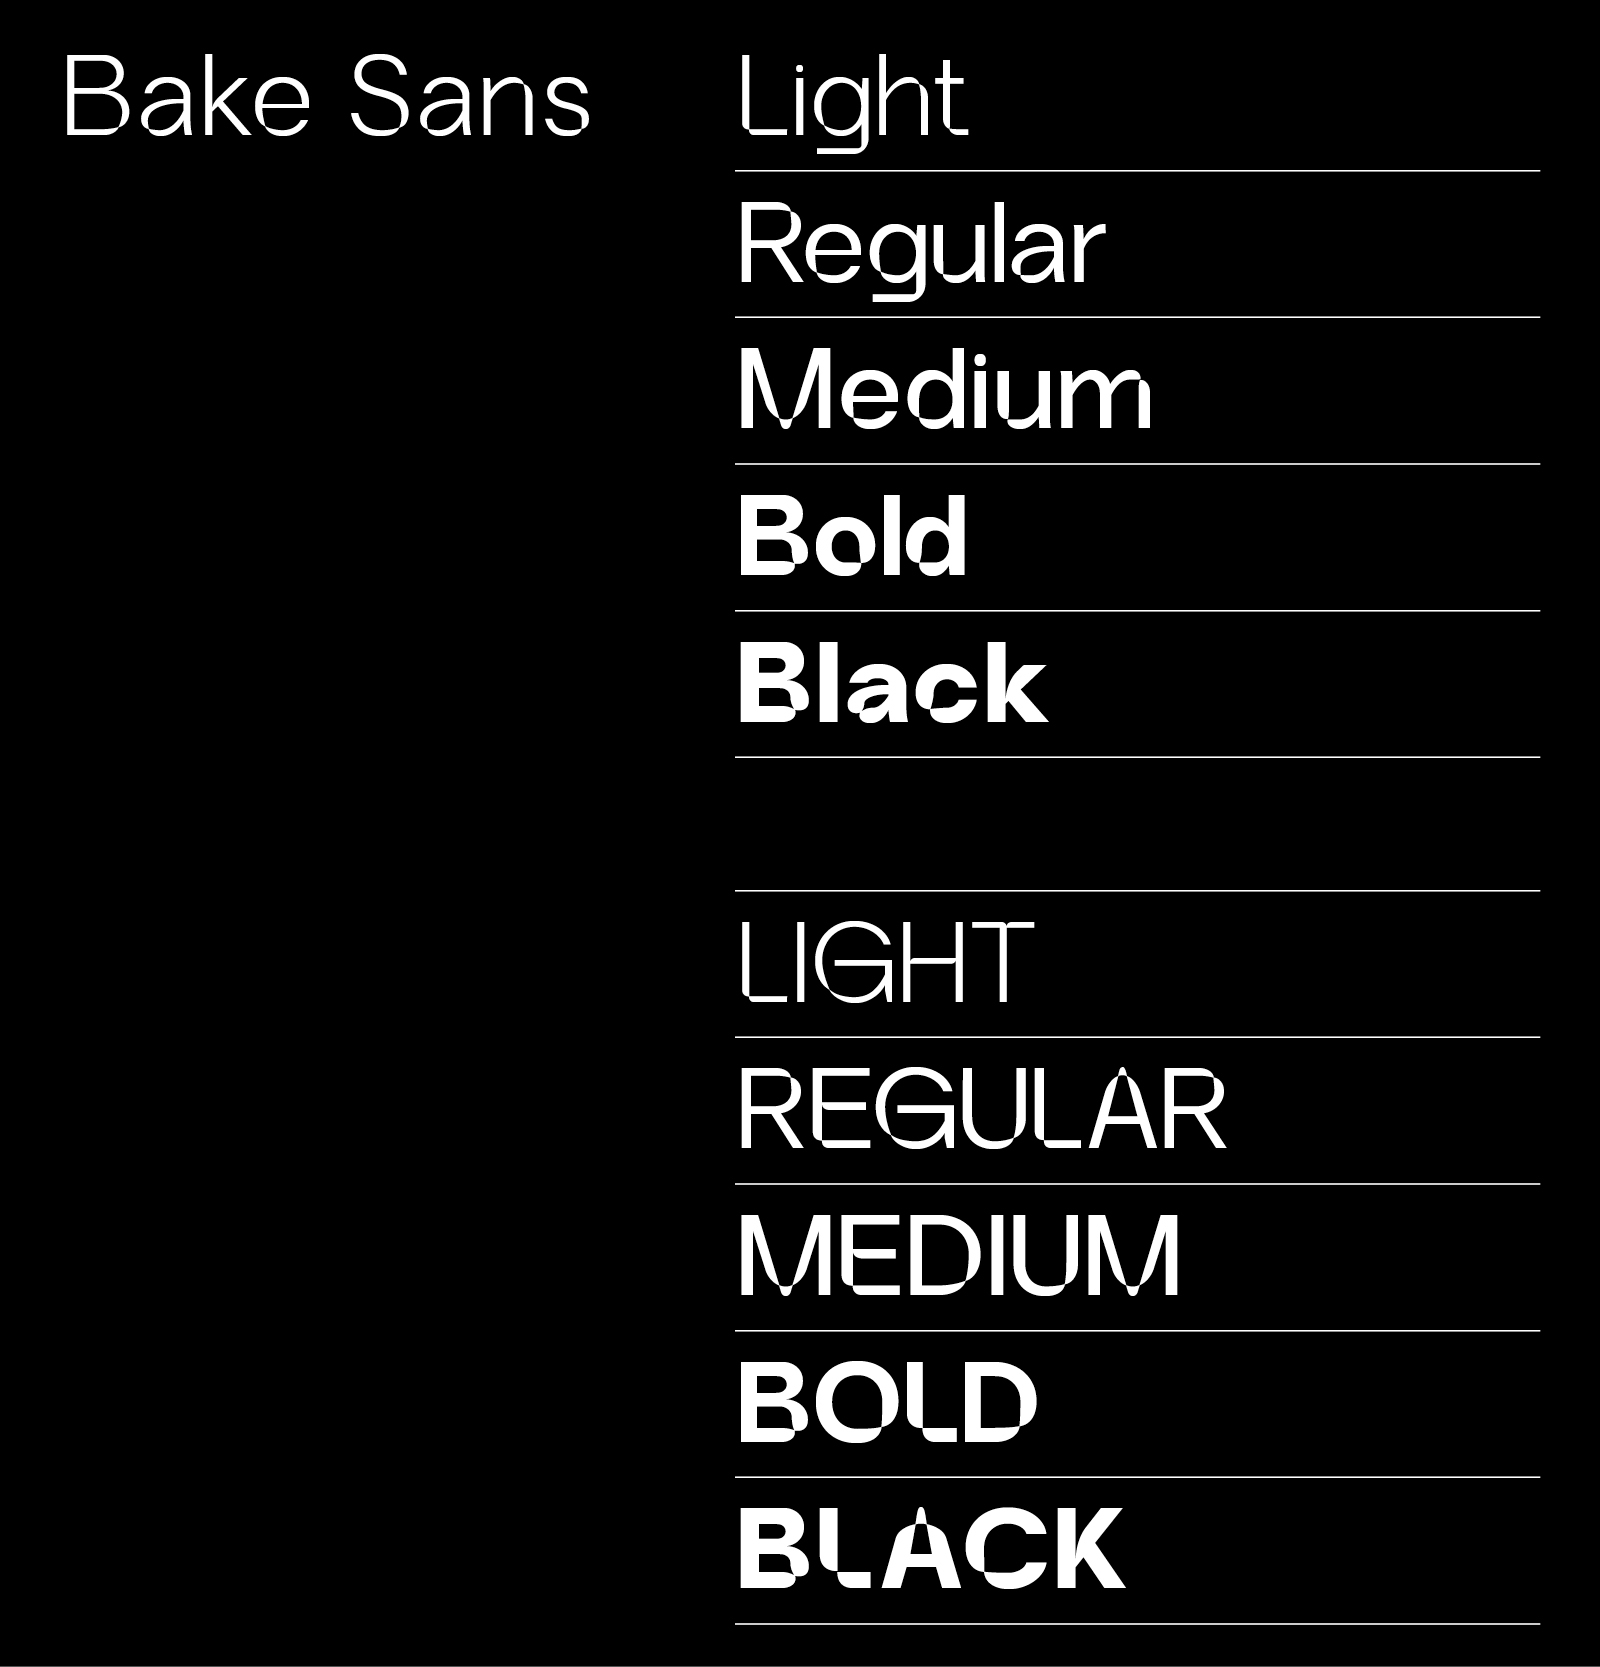 Bake Sans font weights